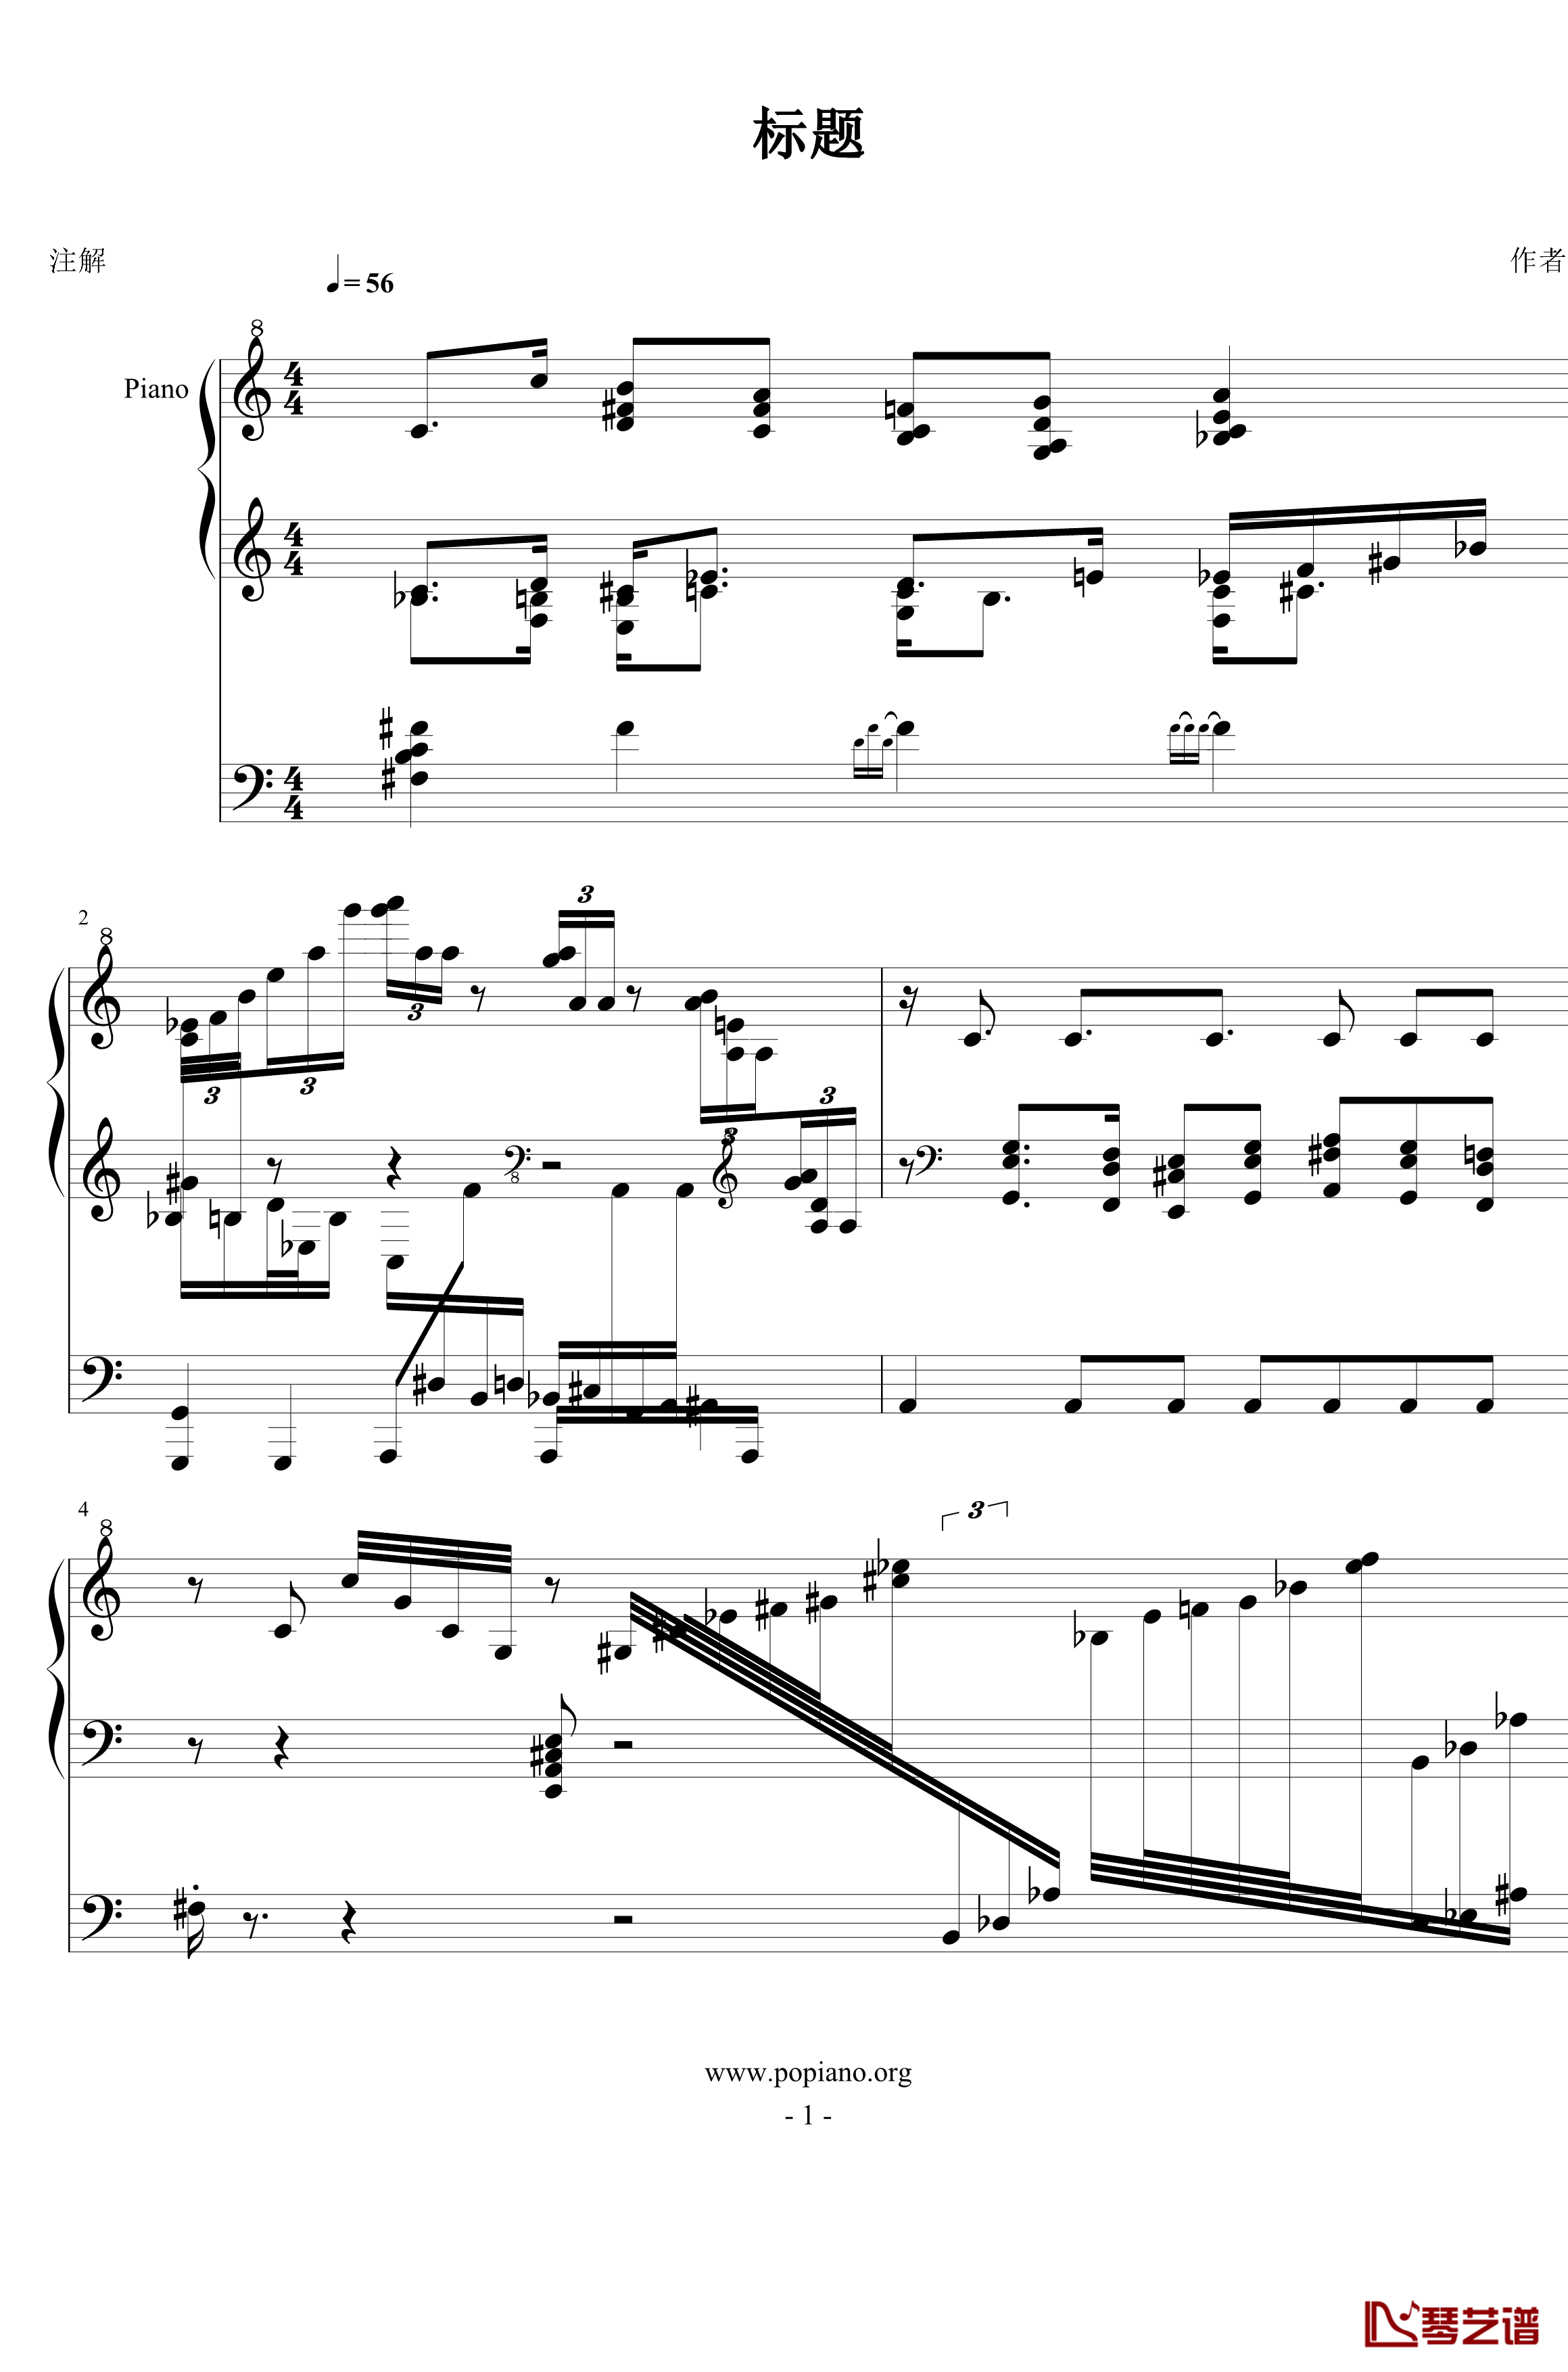 秋汶钢琴谱-FIRSTONE1